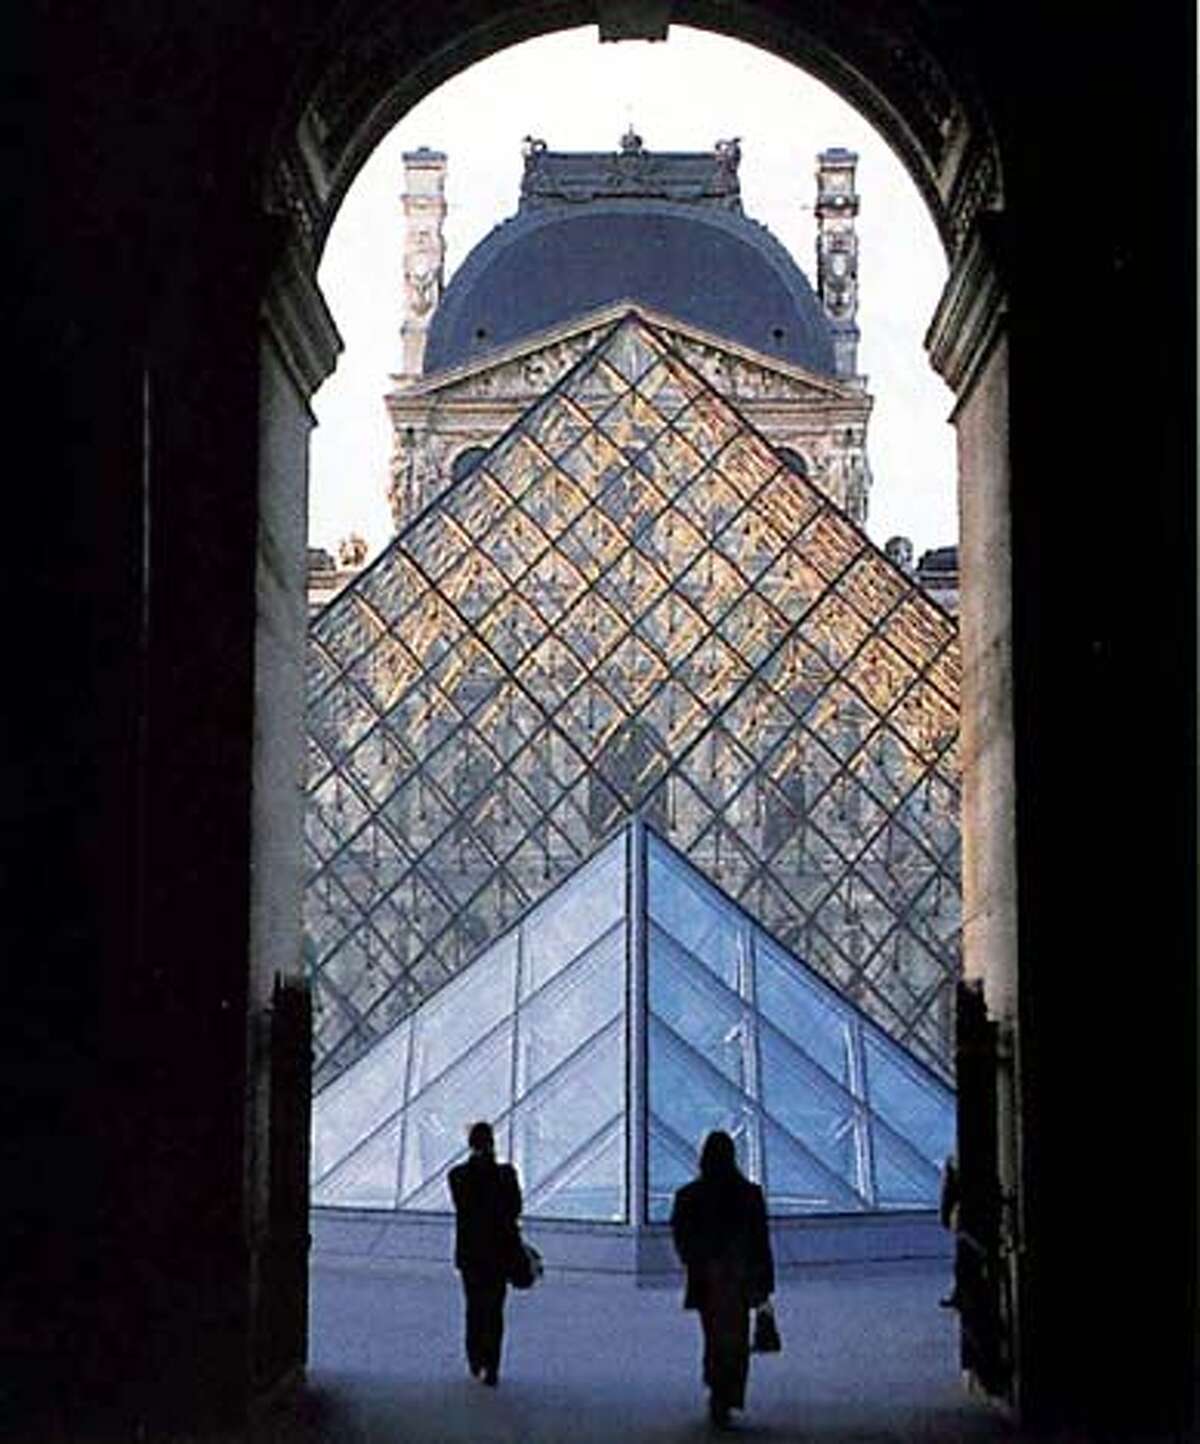 Paris provides clues to fans of 'Da Vinci Code' / Saint-Sulpice, Louvre  tied in tale